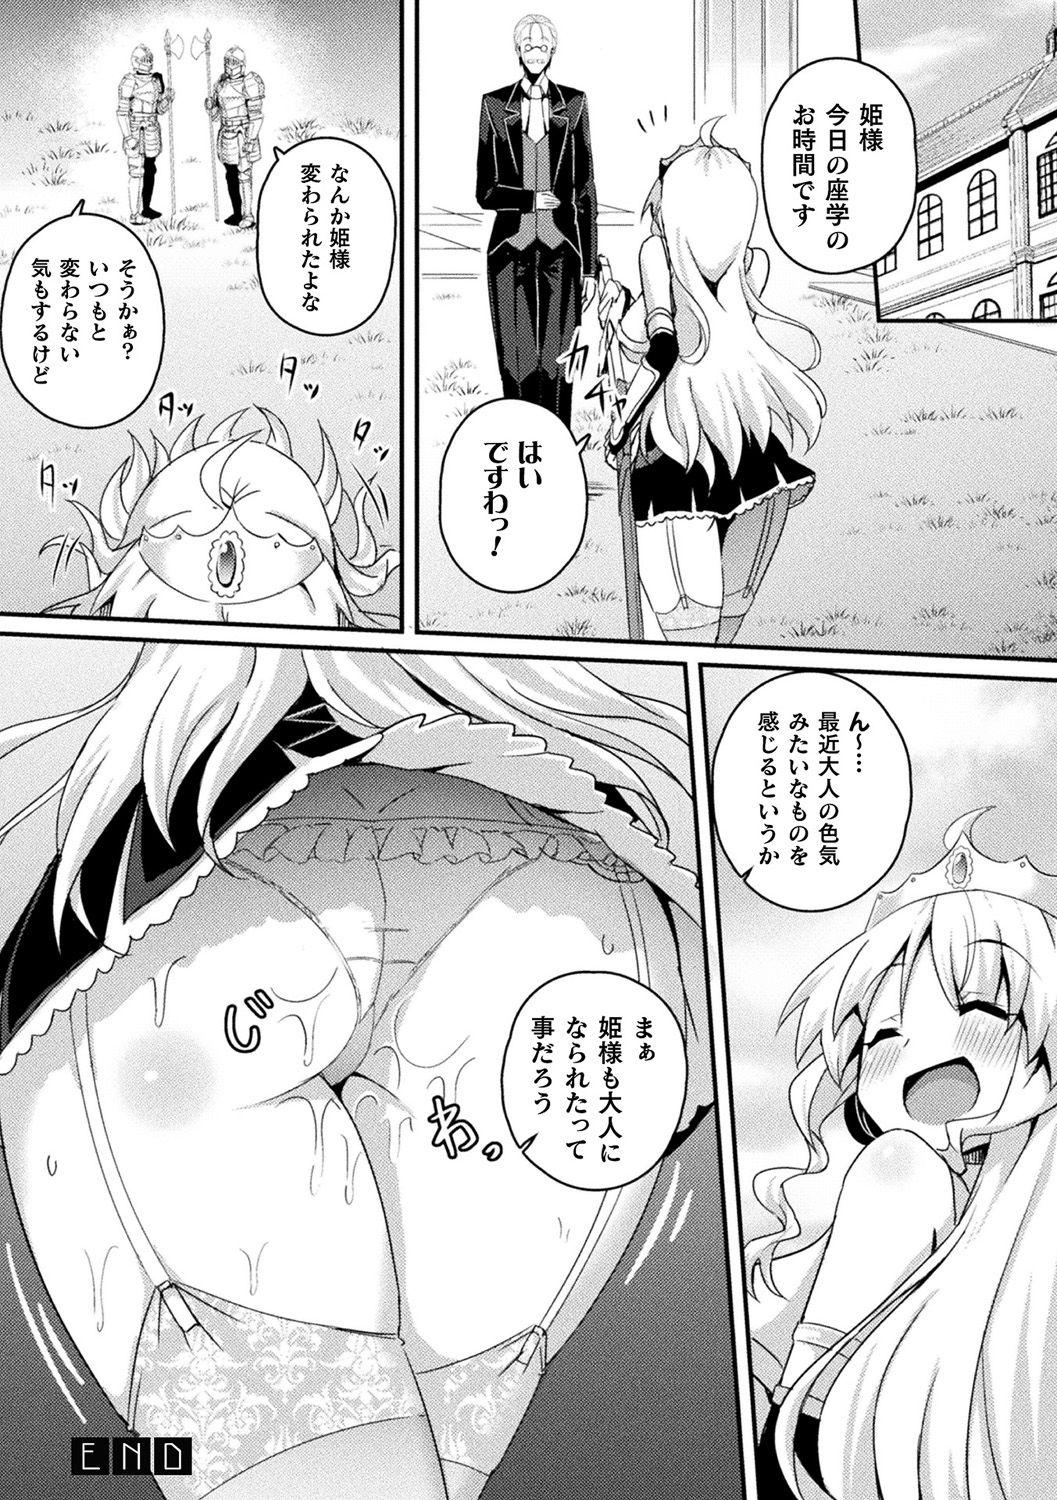 [Anthology] Bessatsu Comic Unreal Ponkotsu Fantasy Heroine H ~Doji o Funde Gyakuten Saretari Ero Trap ni Hamattari!?~ Vol. 2 [Digital] 23